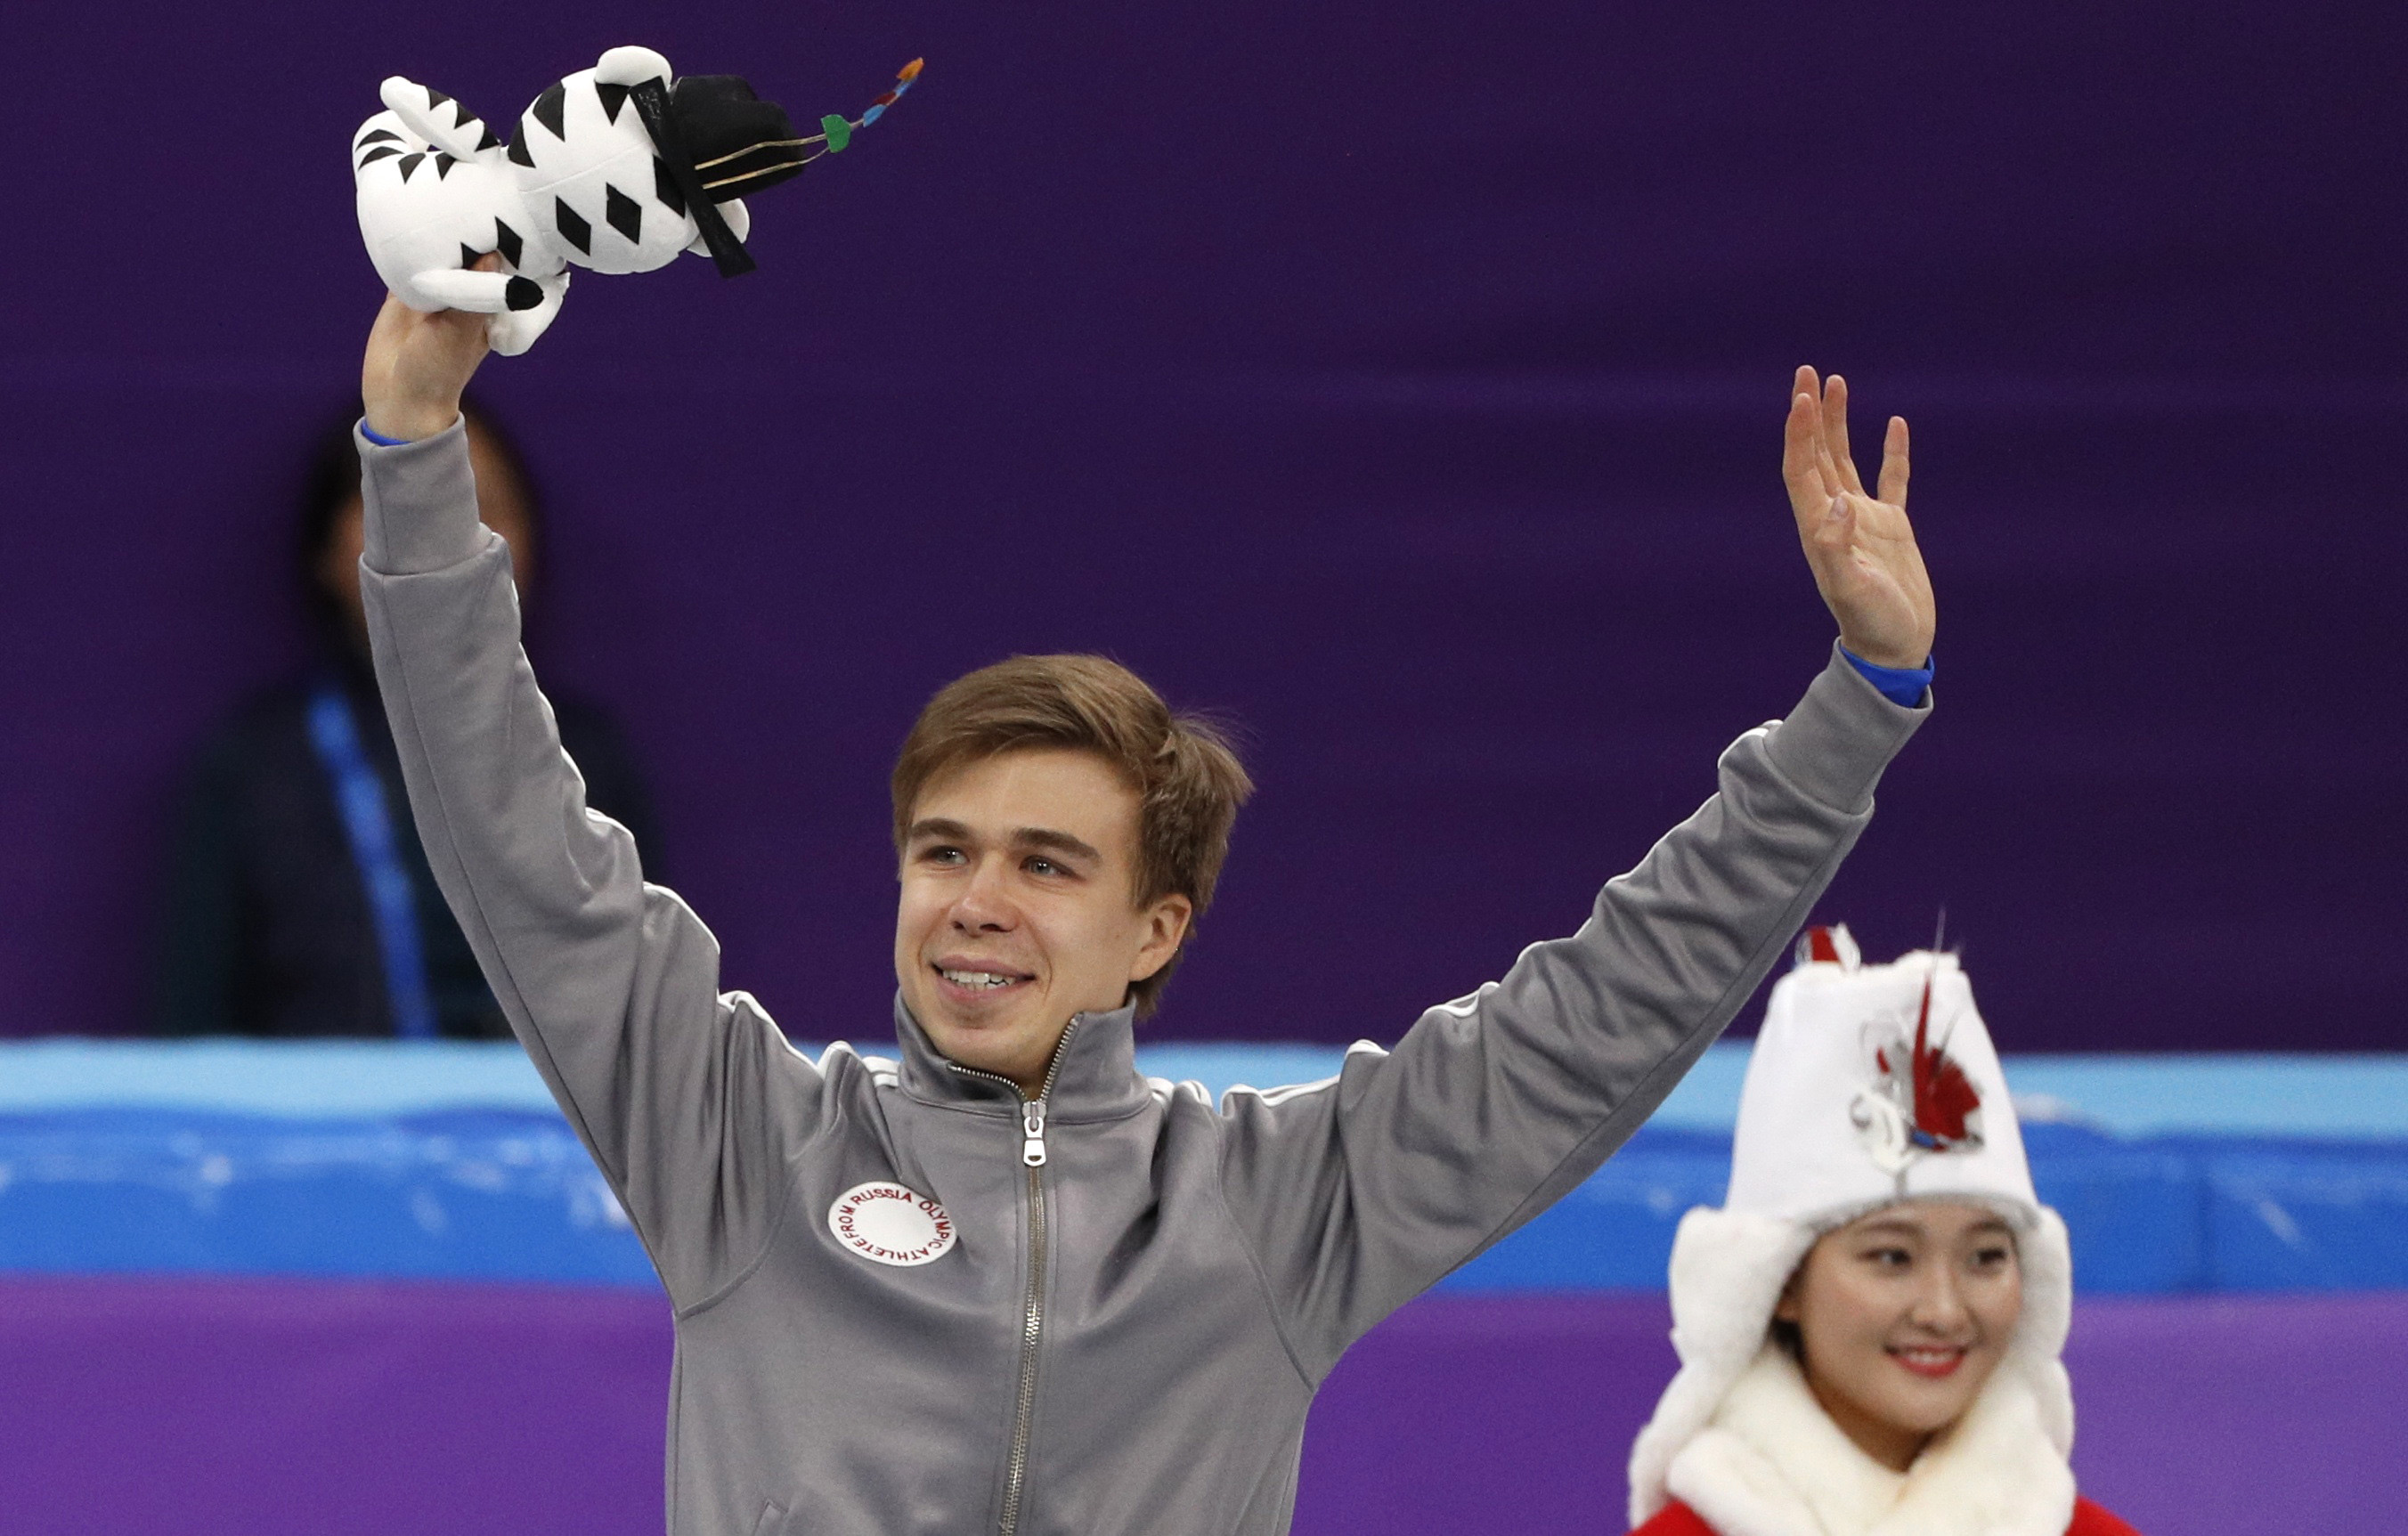 Семён Елистратов принёс России первую медаль на этих Олимпийских играх! Браво! Фото: © REUTERS/John Sibley